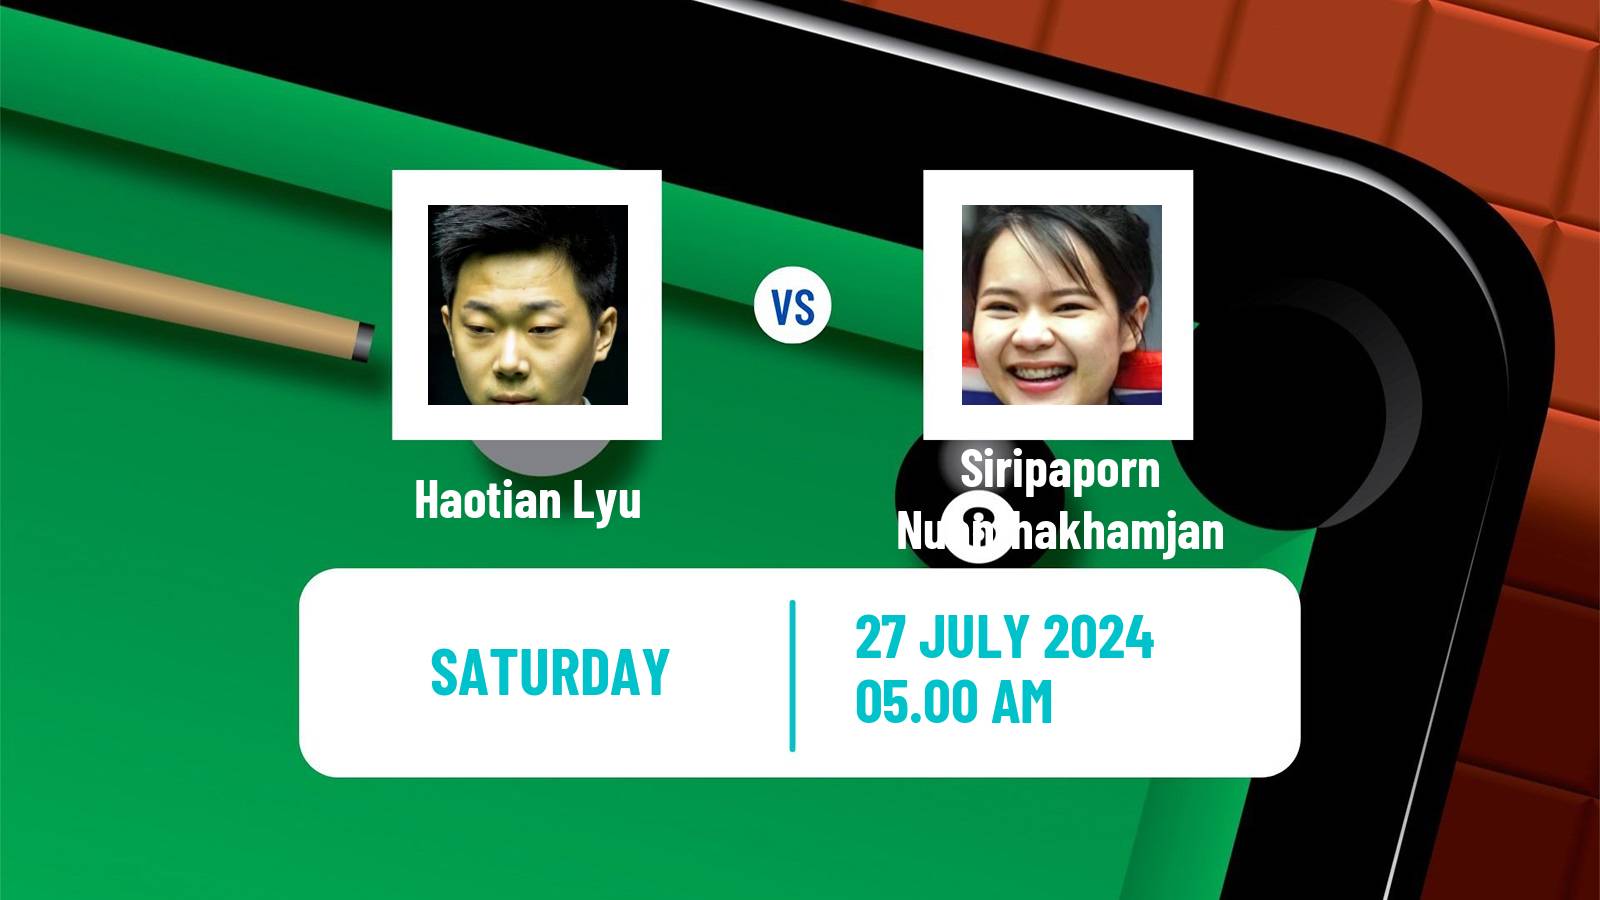 Snooker Grand Prix Haotian Lyu - Siripaporn Nuanthakhamjan